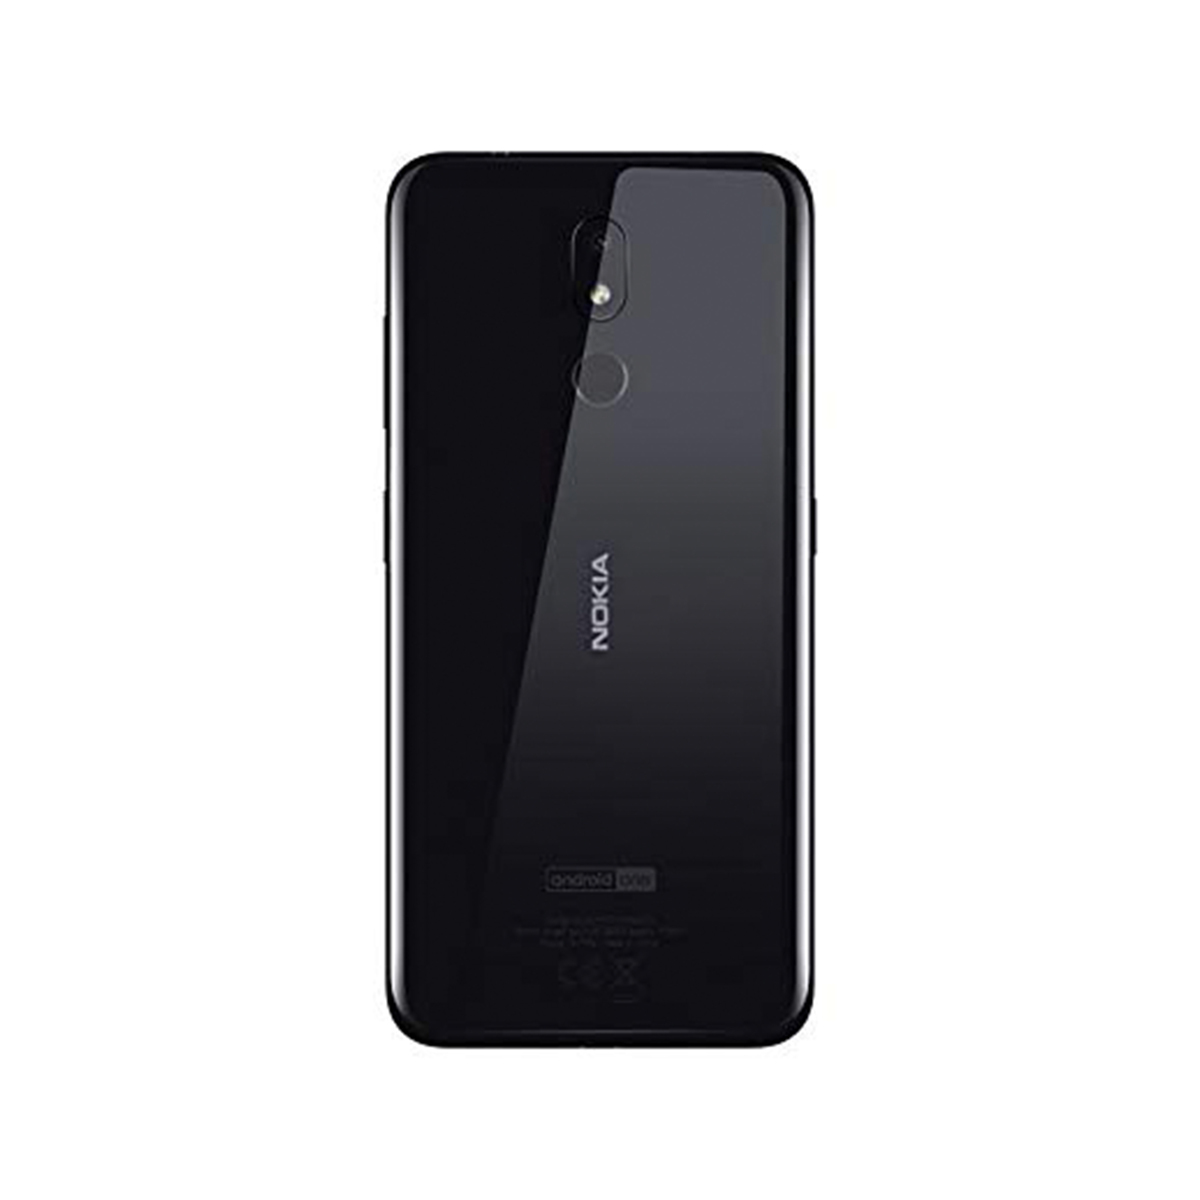 Nokia 3.2 16GB Black